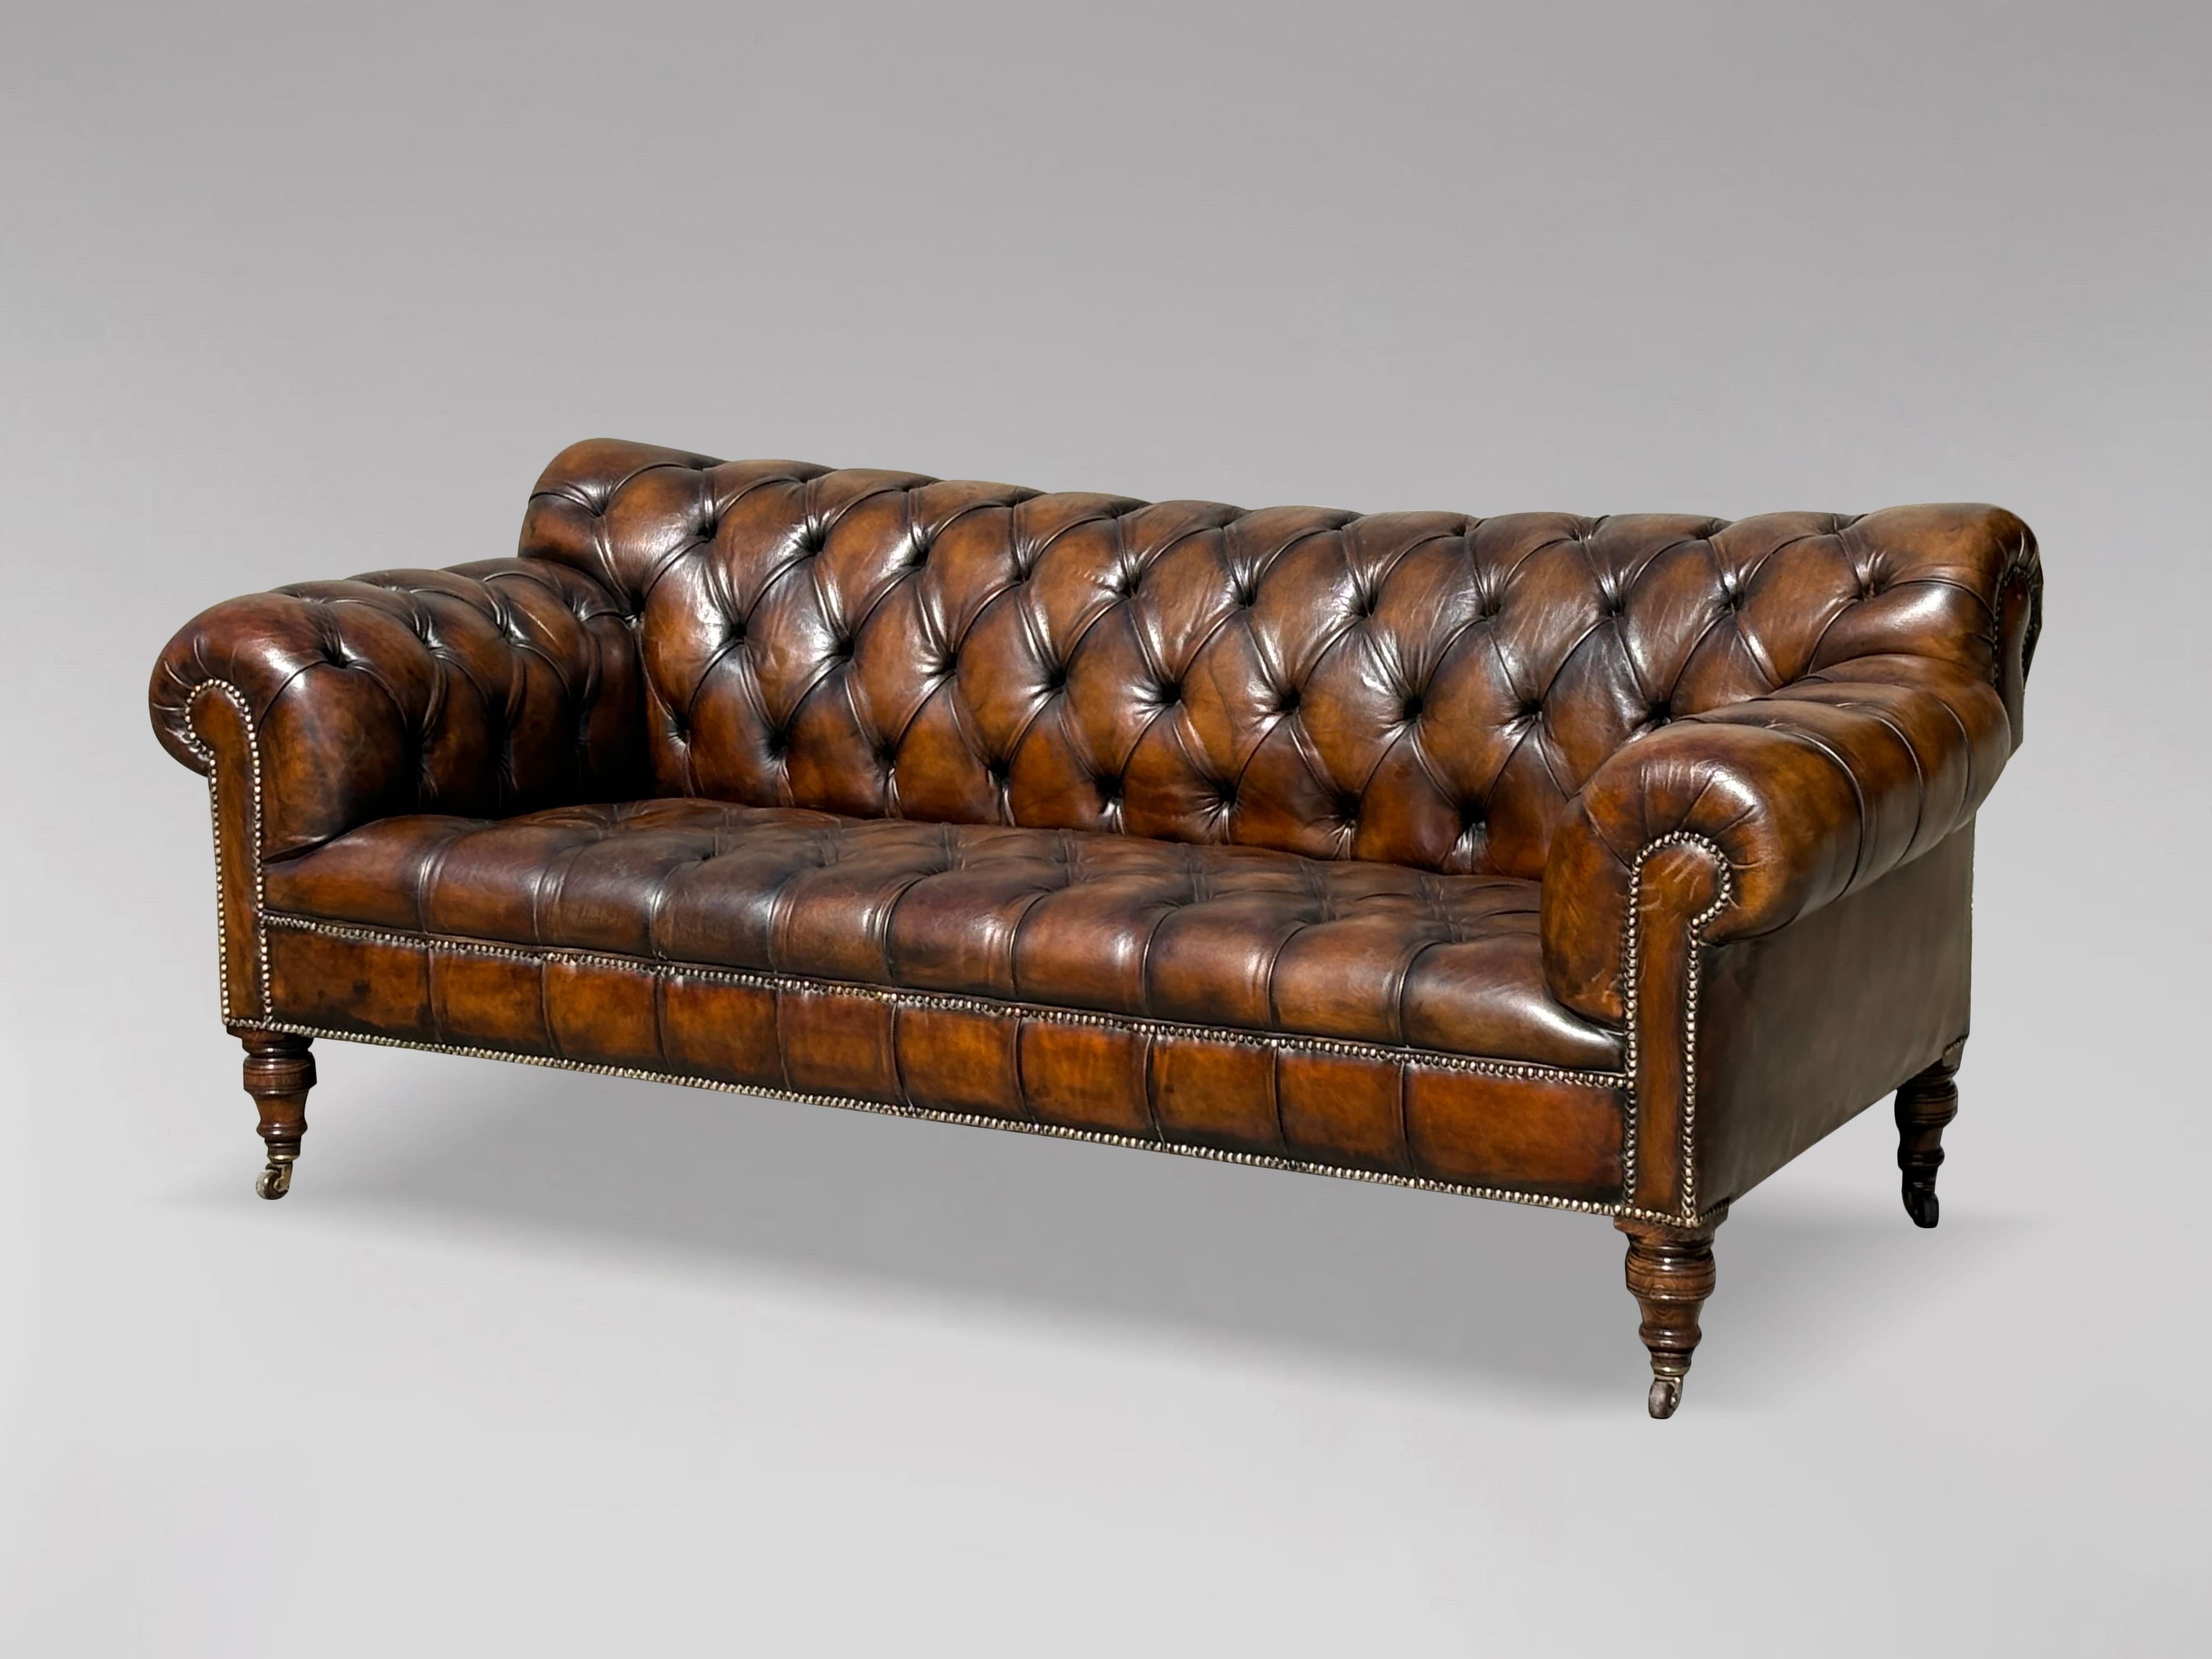 Superbe canapé Chesterfield en cuir marron à trois places, d'époque victorienne, datant du 19e siècle. Le cuir marron d'origine a été nettoyé et poli, ce qui lui confère un aspect doux et somptueux. Il est doté d'un siège entièrement rabattable,